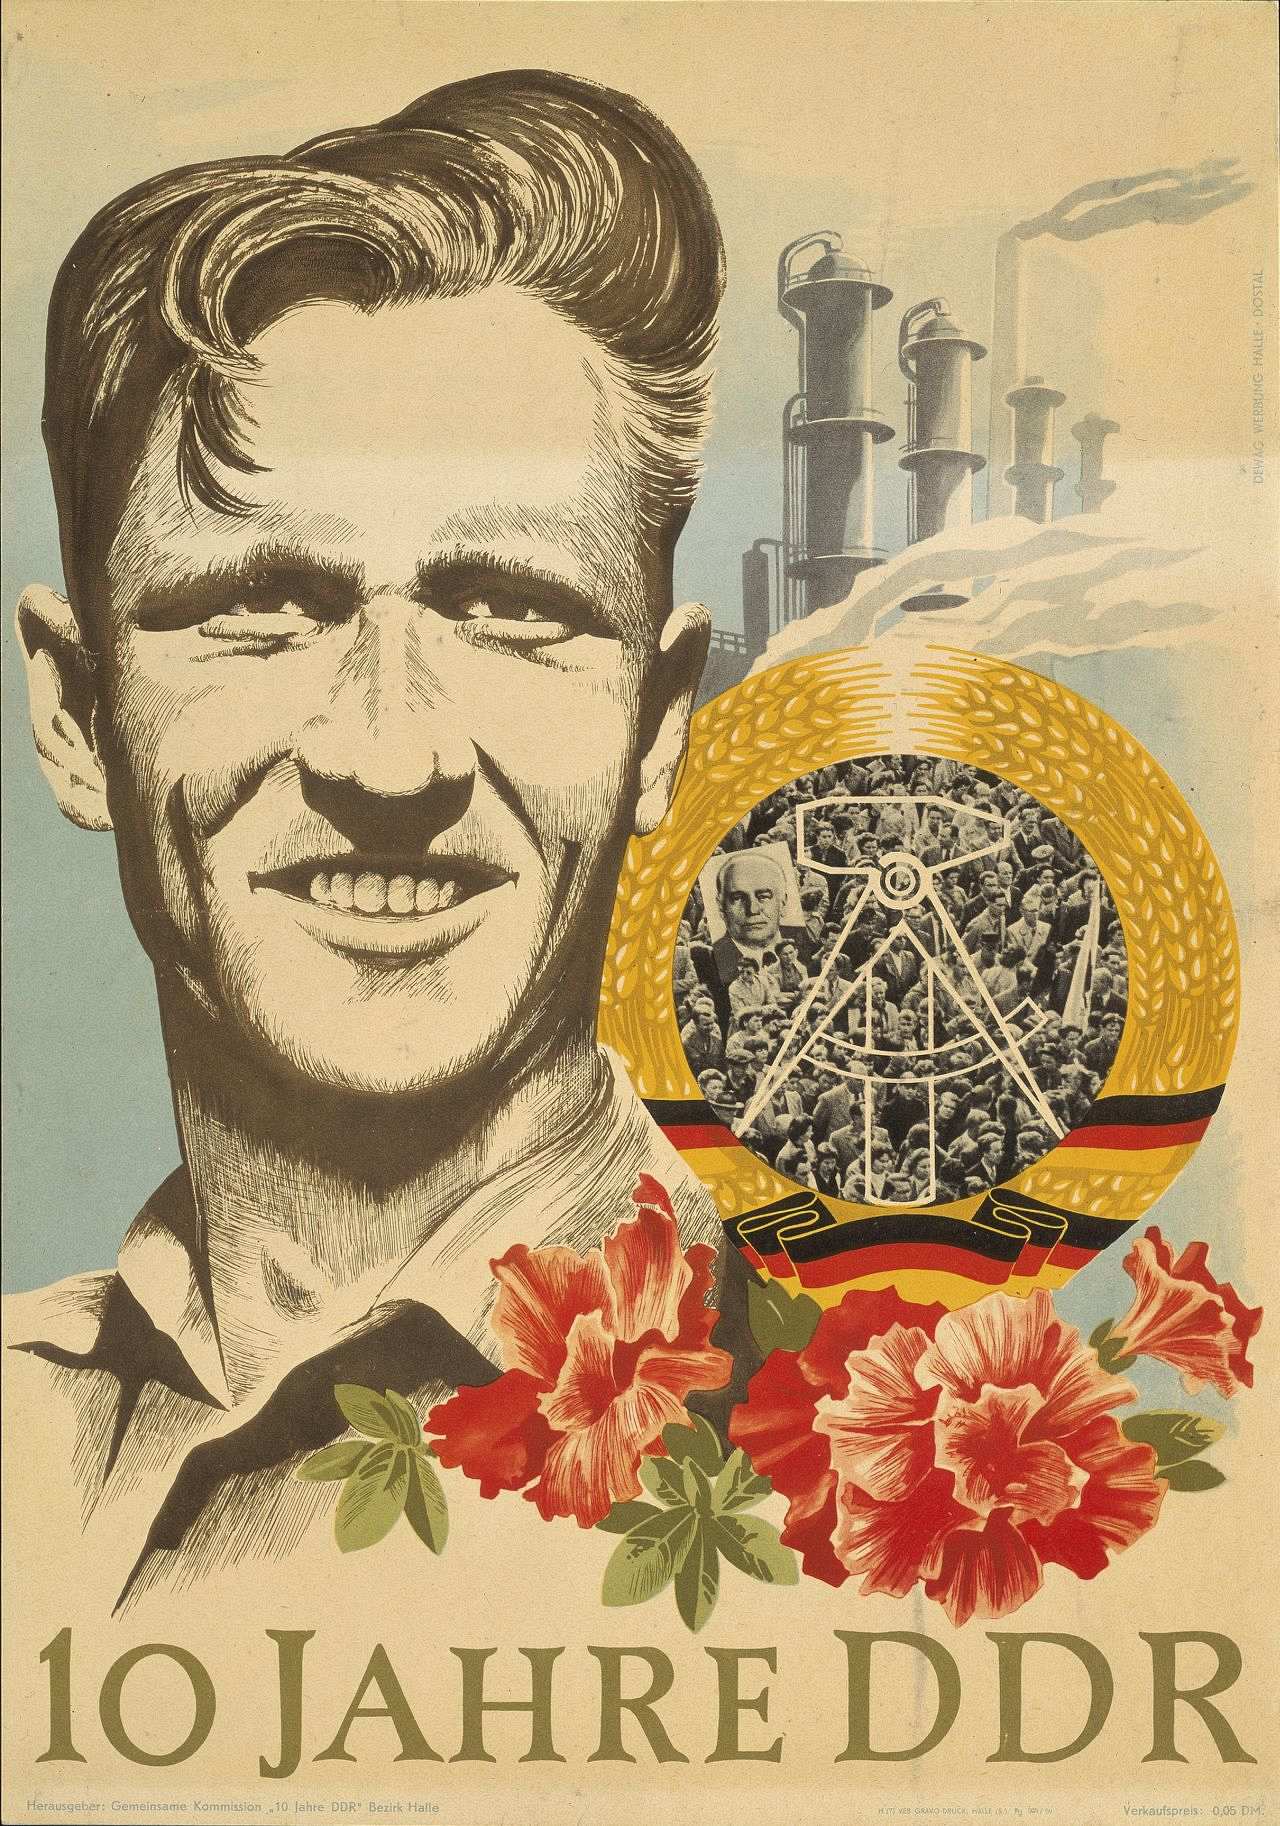 Farbige Zeichnung: Männerporträt, im Hintergrund Fabrikanlage, davor DDR-Emblem und Blumen. Unten Schriftzug: 10 Jahre DDR